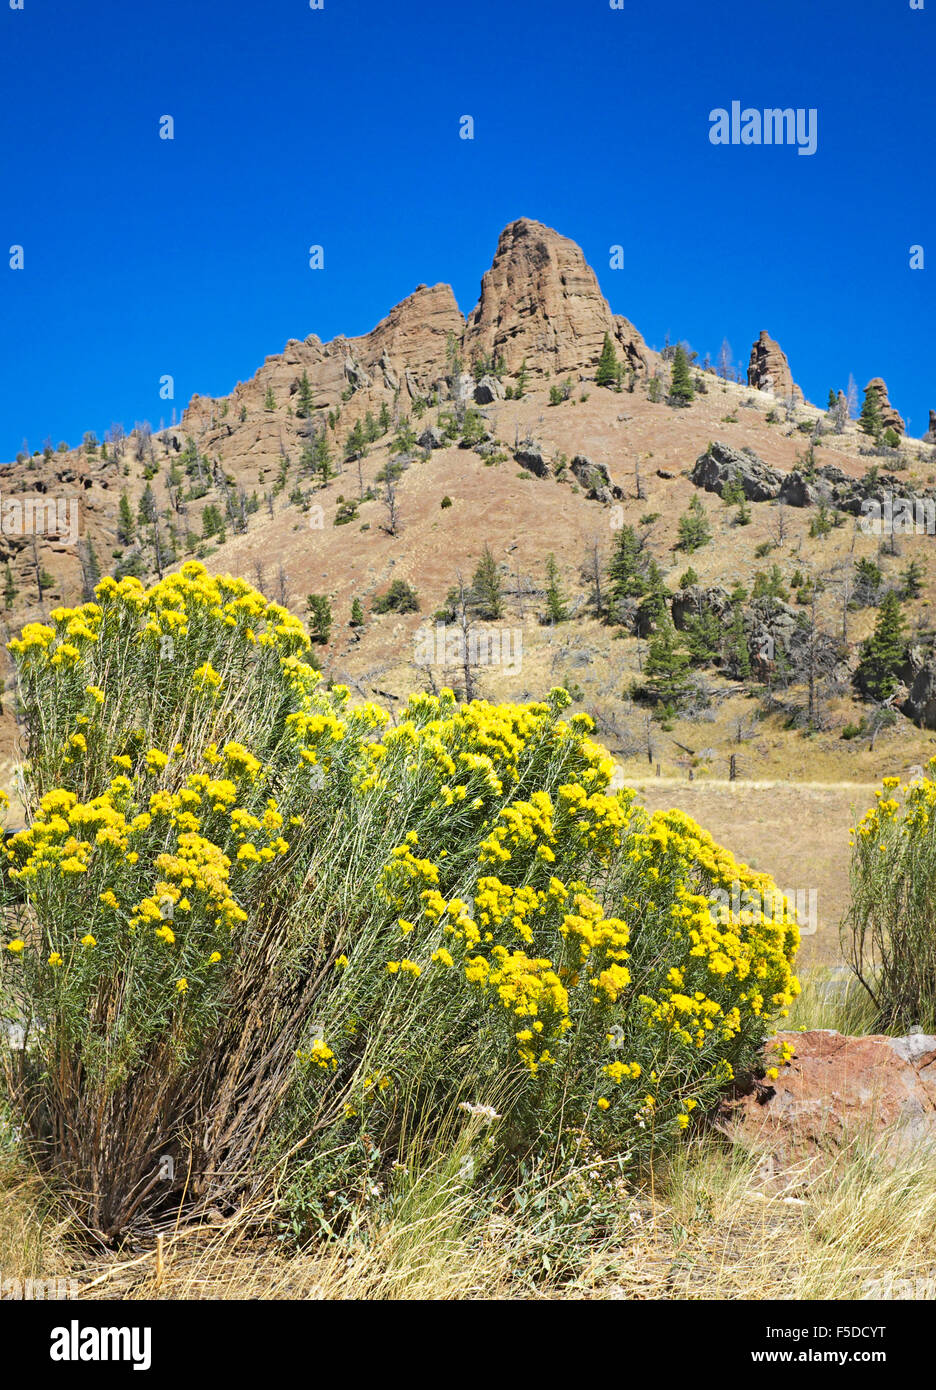 Lapin jaune vif, également connu sous le nom de bush chamisa, en fleur en septembre dans l'Absaroka Montagnes de l'ouest du Wyoming. Banque D'Images